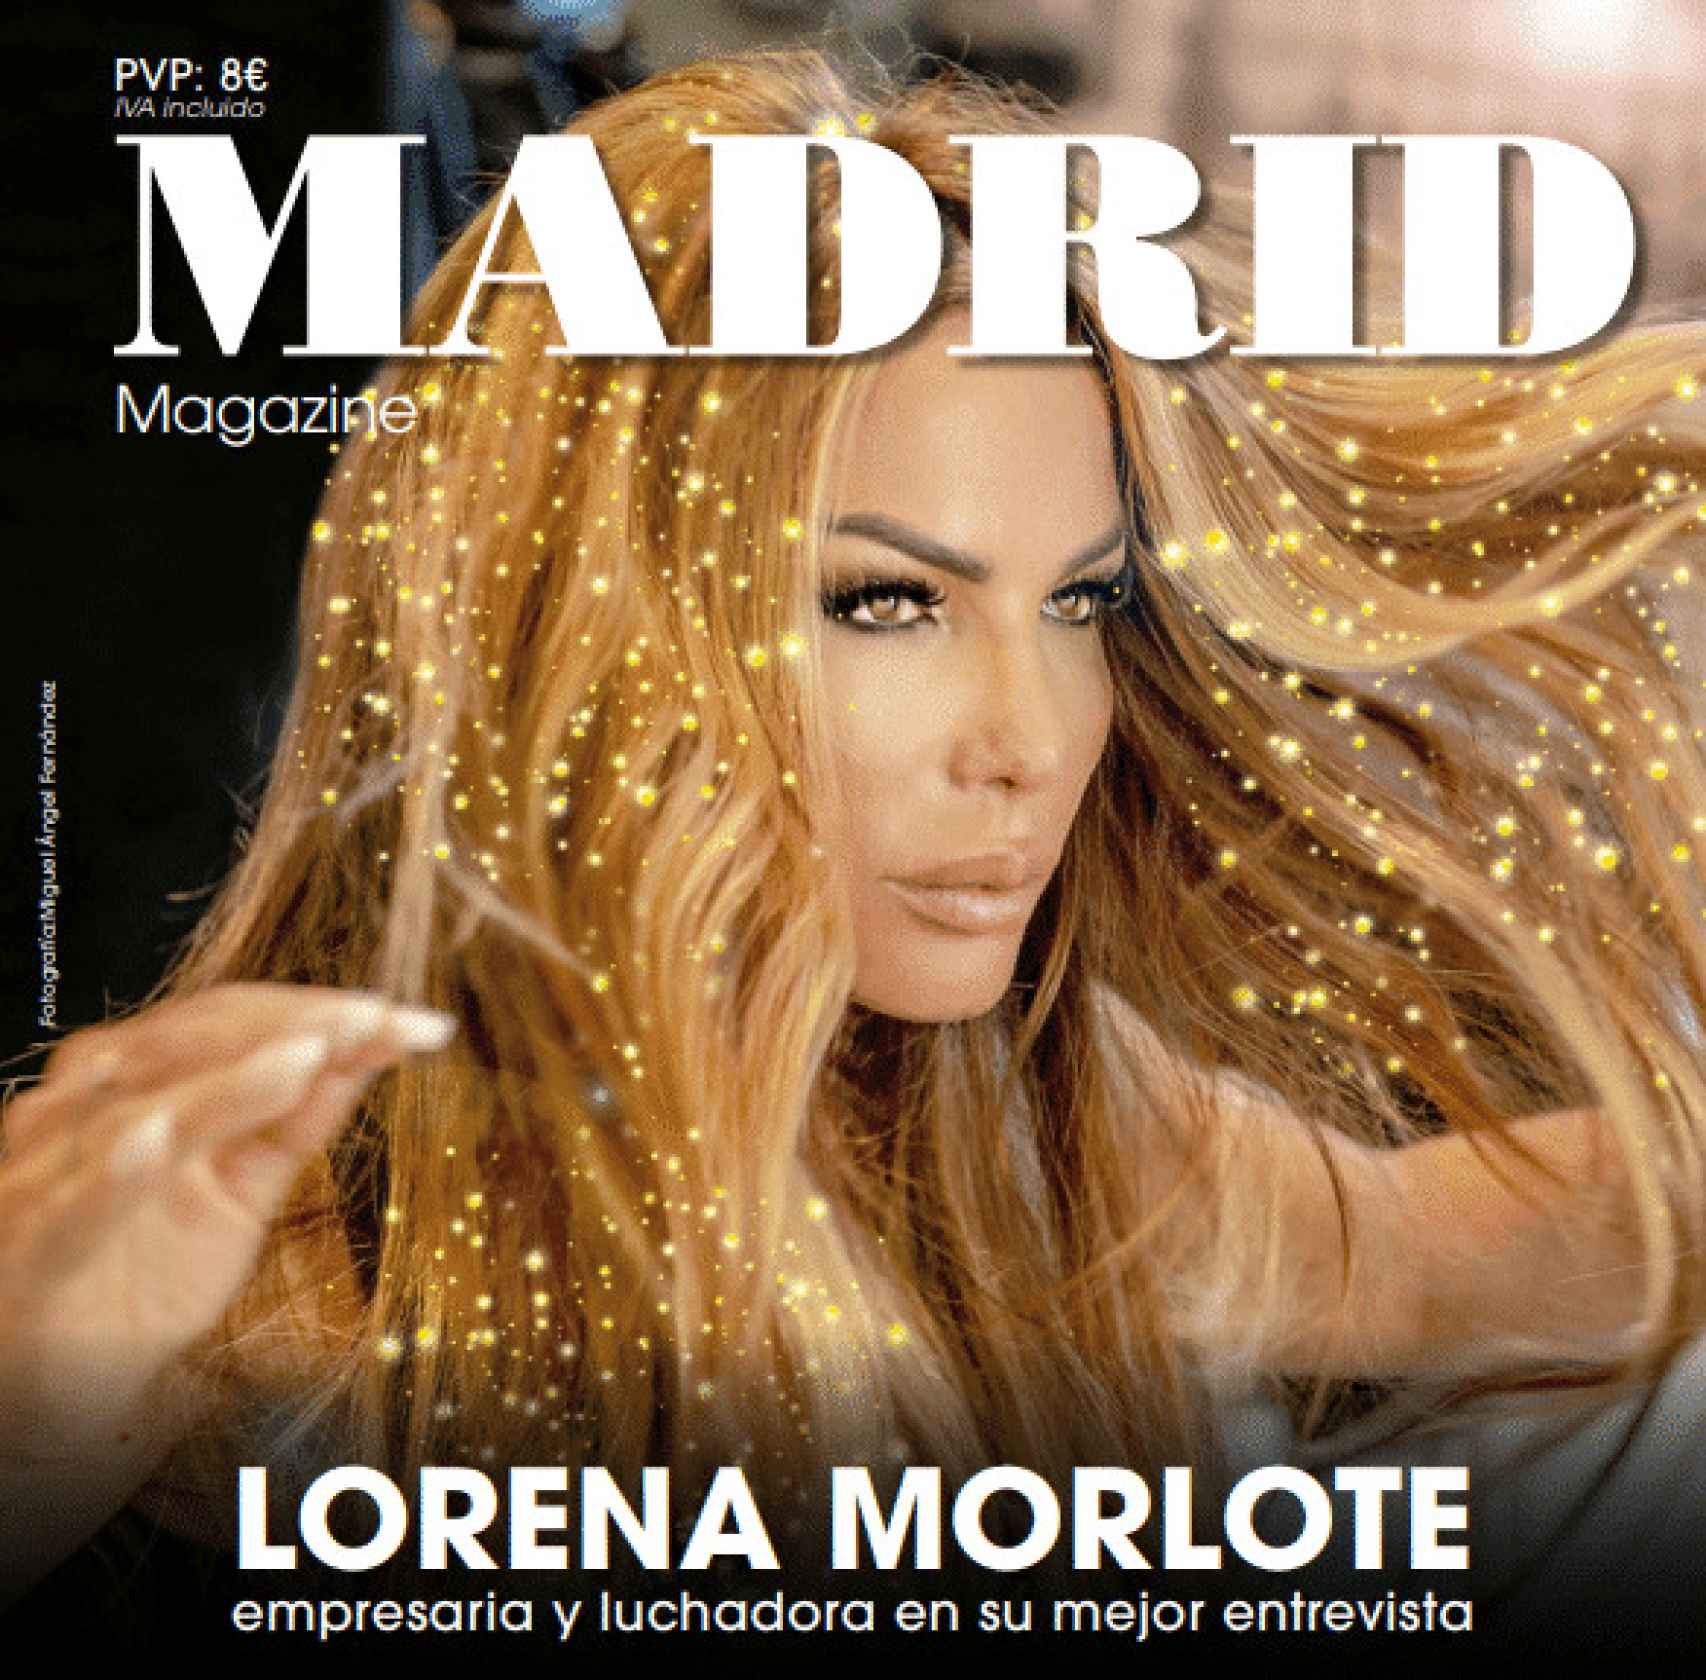 Portada de la revista 'Madrid Magazine' donde Edmundo vuelve a firmar un artículo como colaborador.